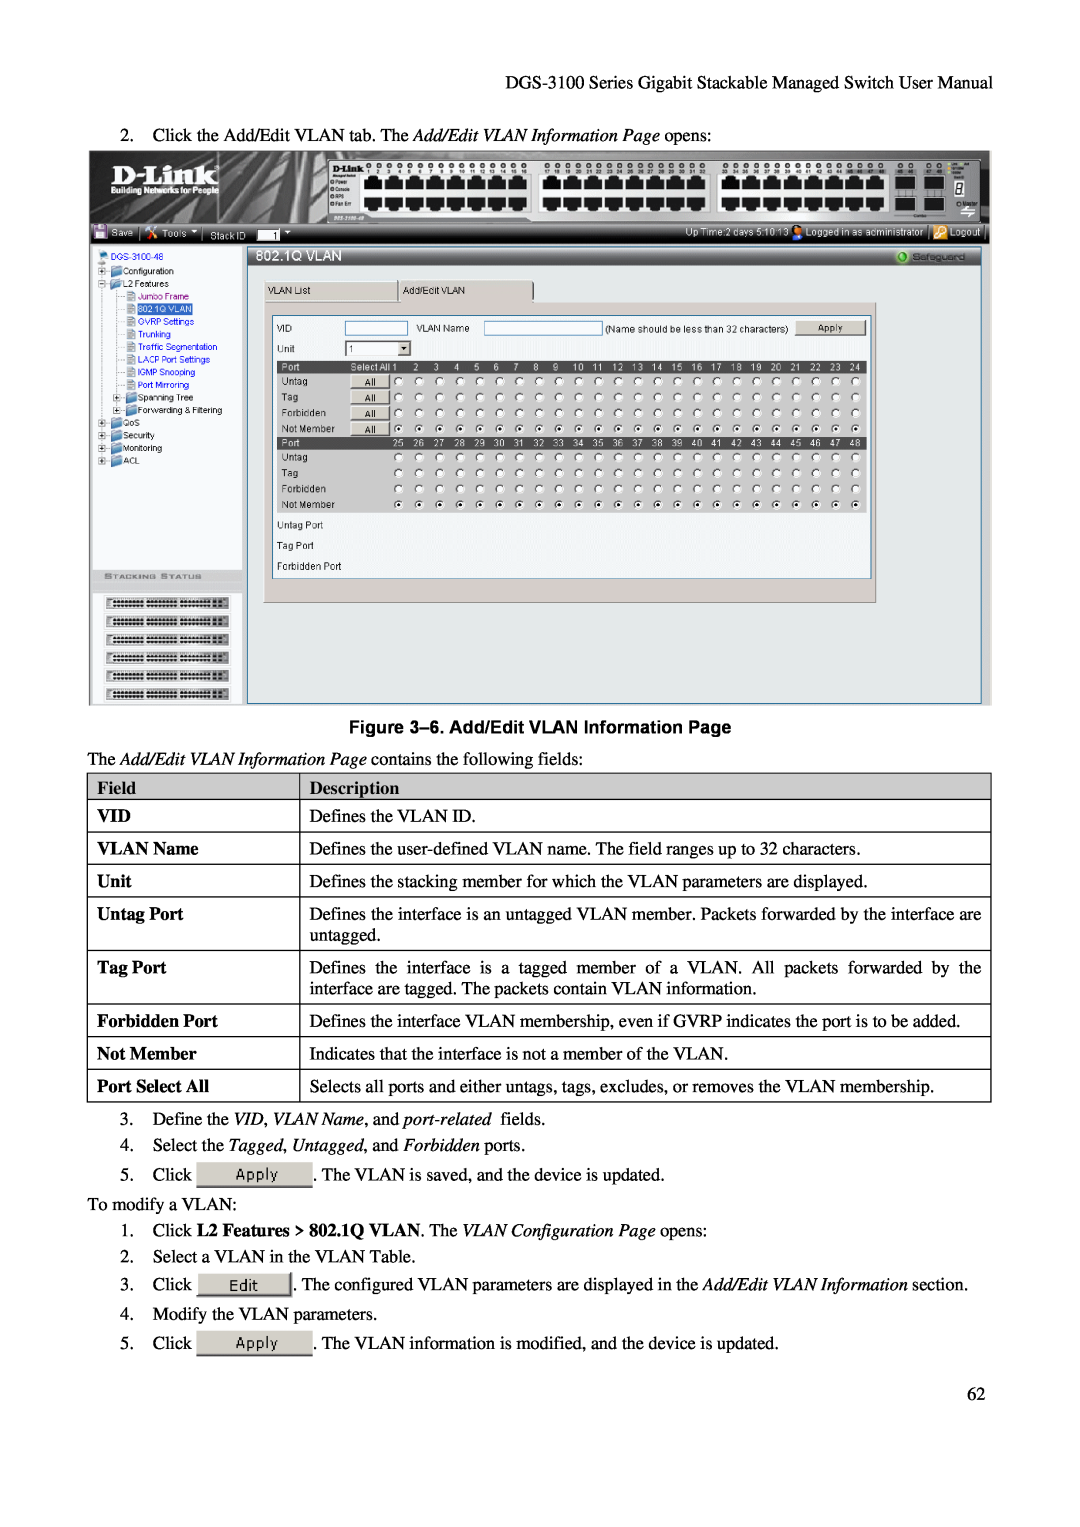 D-Link DGS-3100 user manual 6. Add/Edit VLAN Information Page, Description 